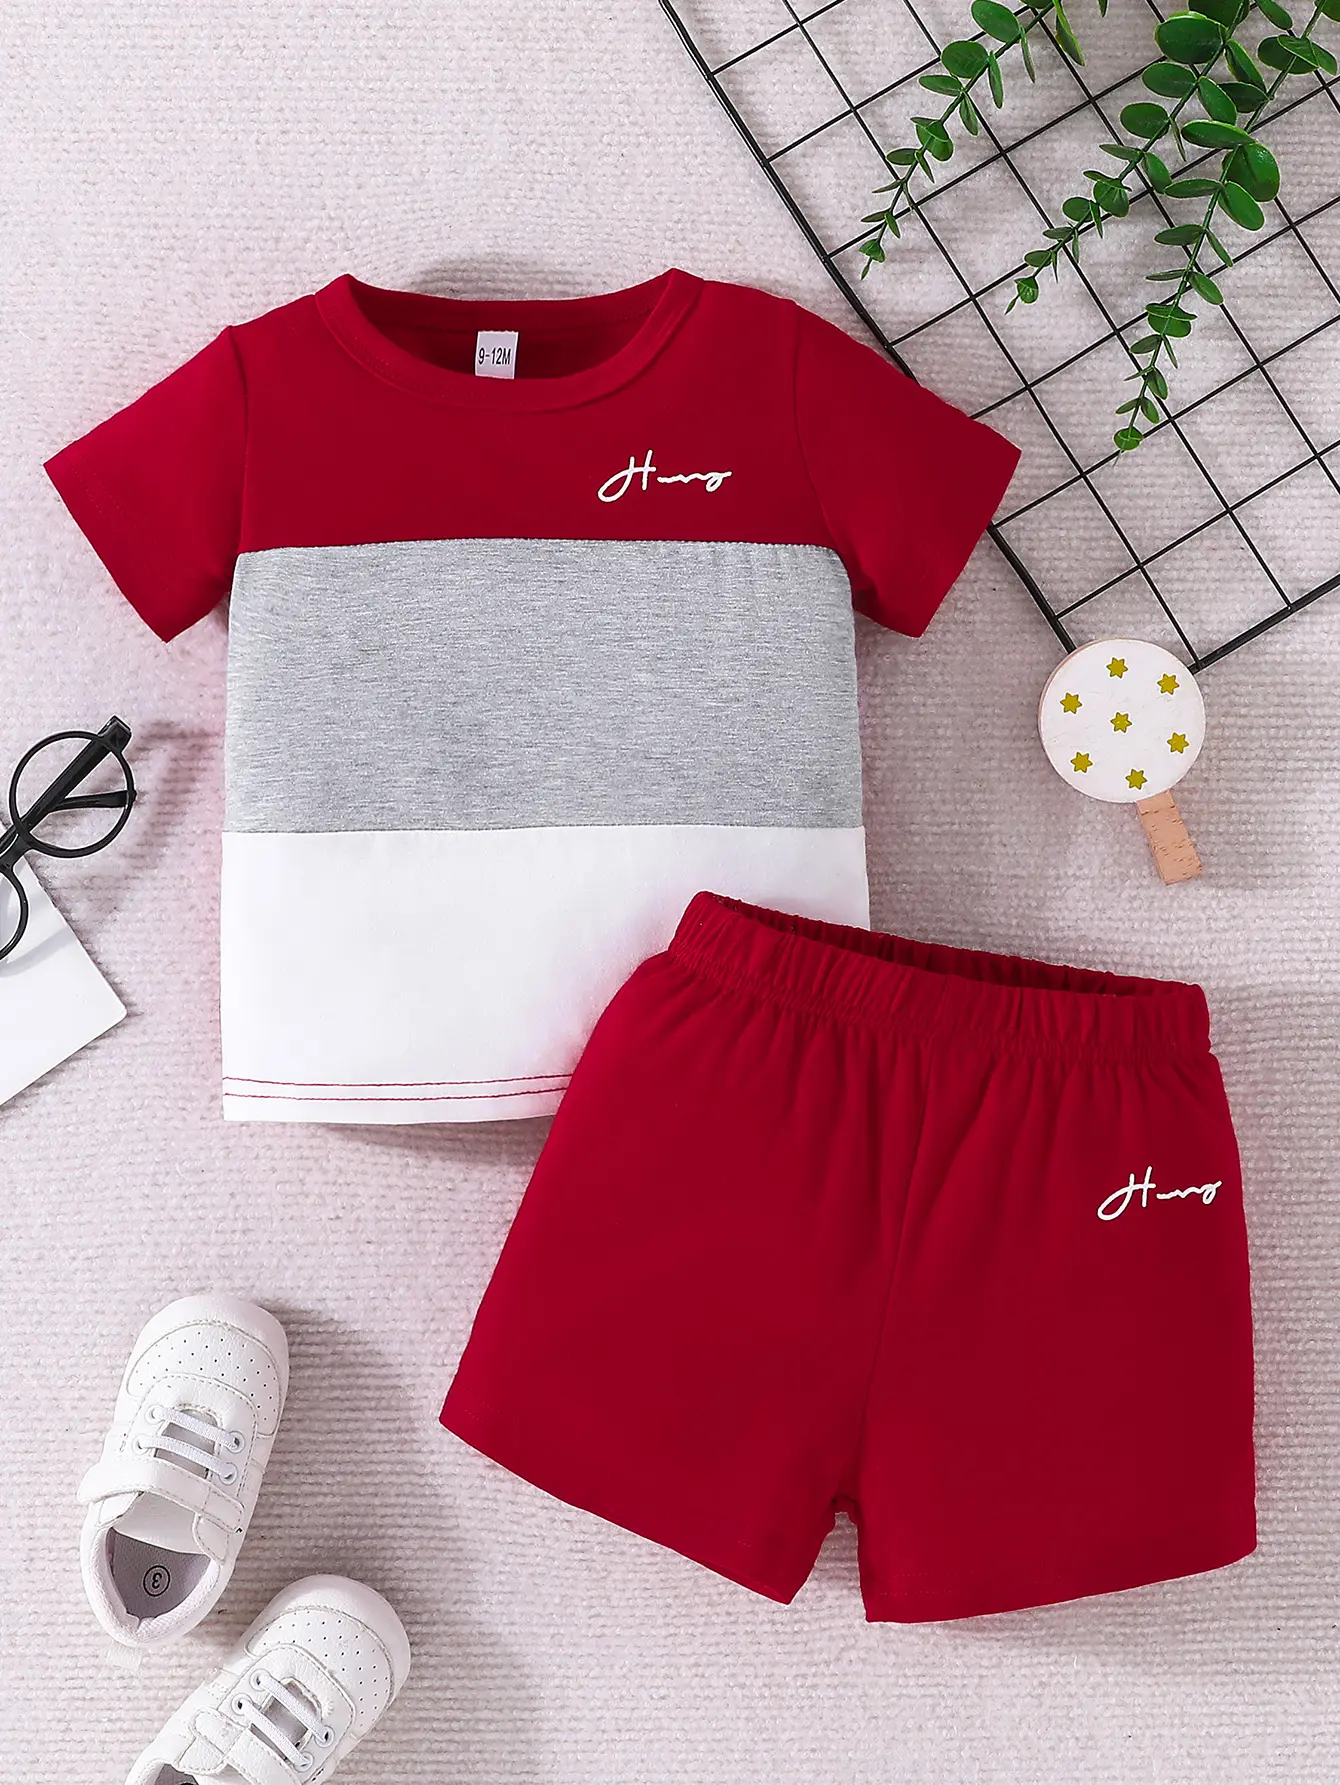 Il popolare completo di t-shirt e pantaloncini cremisi per bambini di Gavin Yang è realizzato in tessuto di poliestere delicato e accogliente